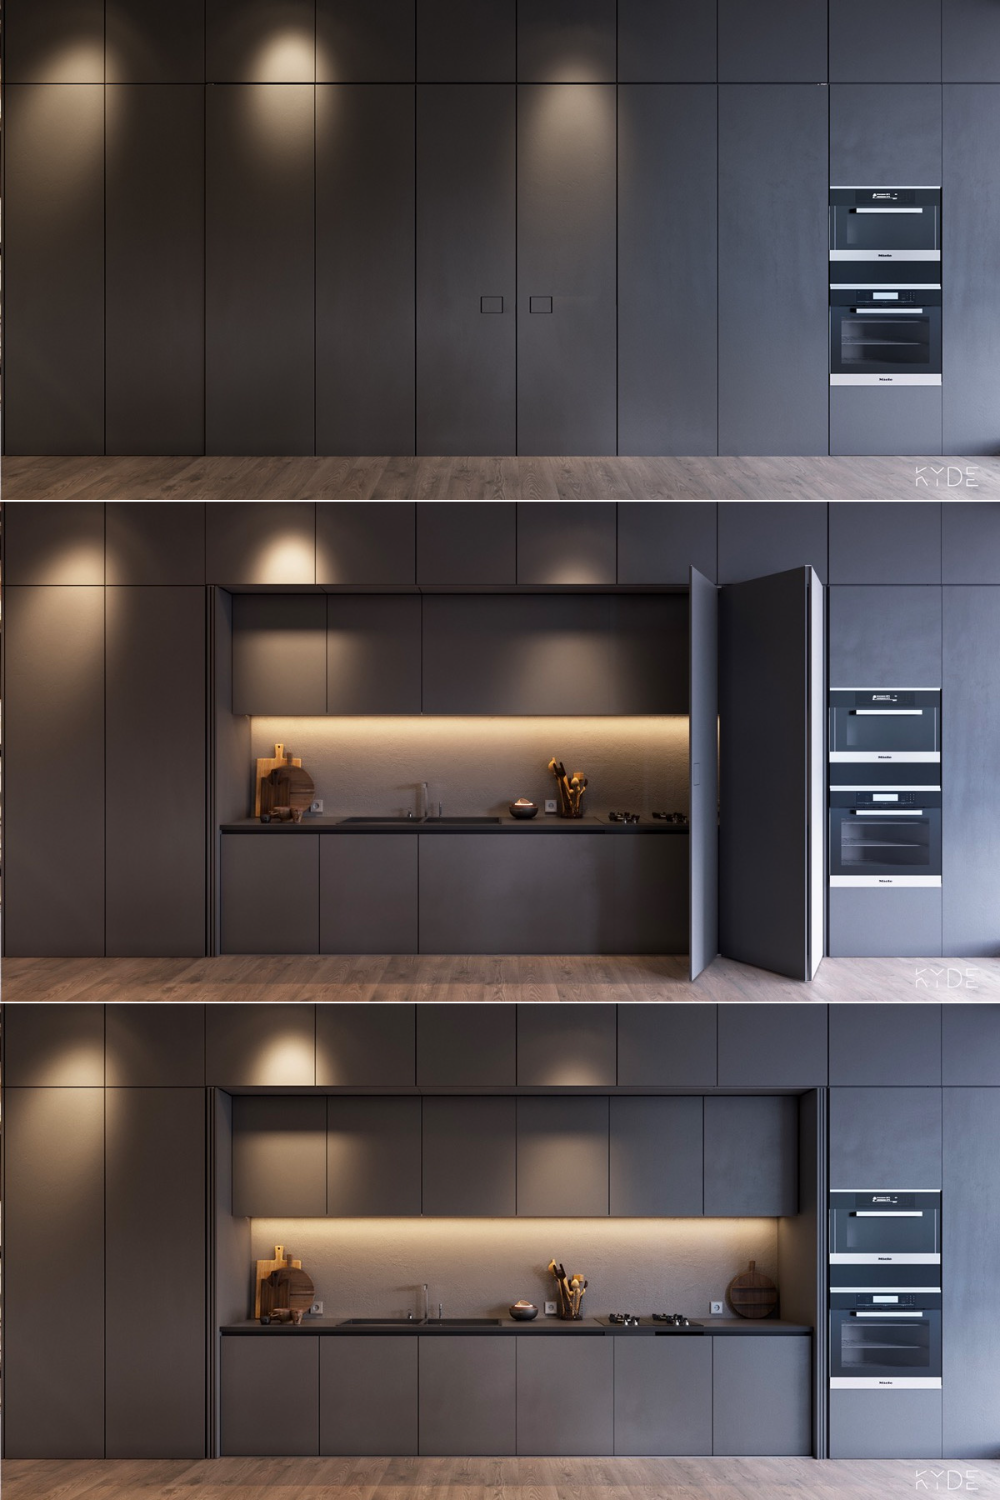 Create a stunning kitchen design